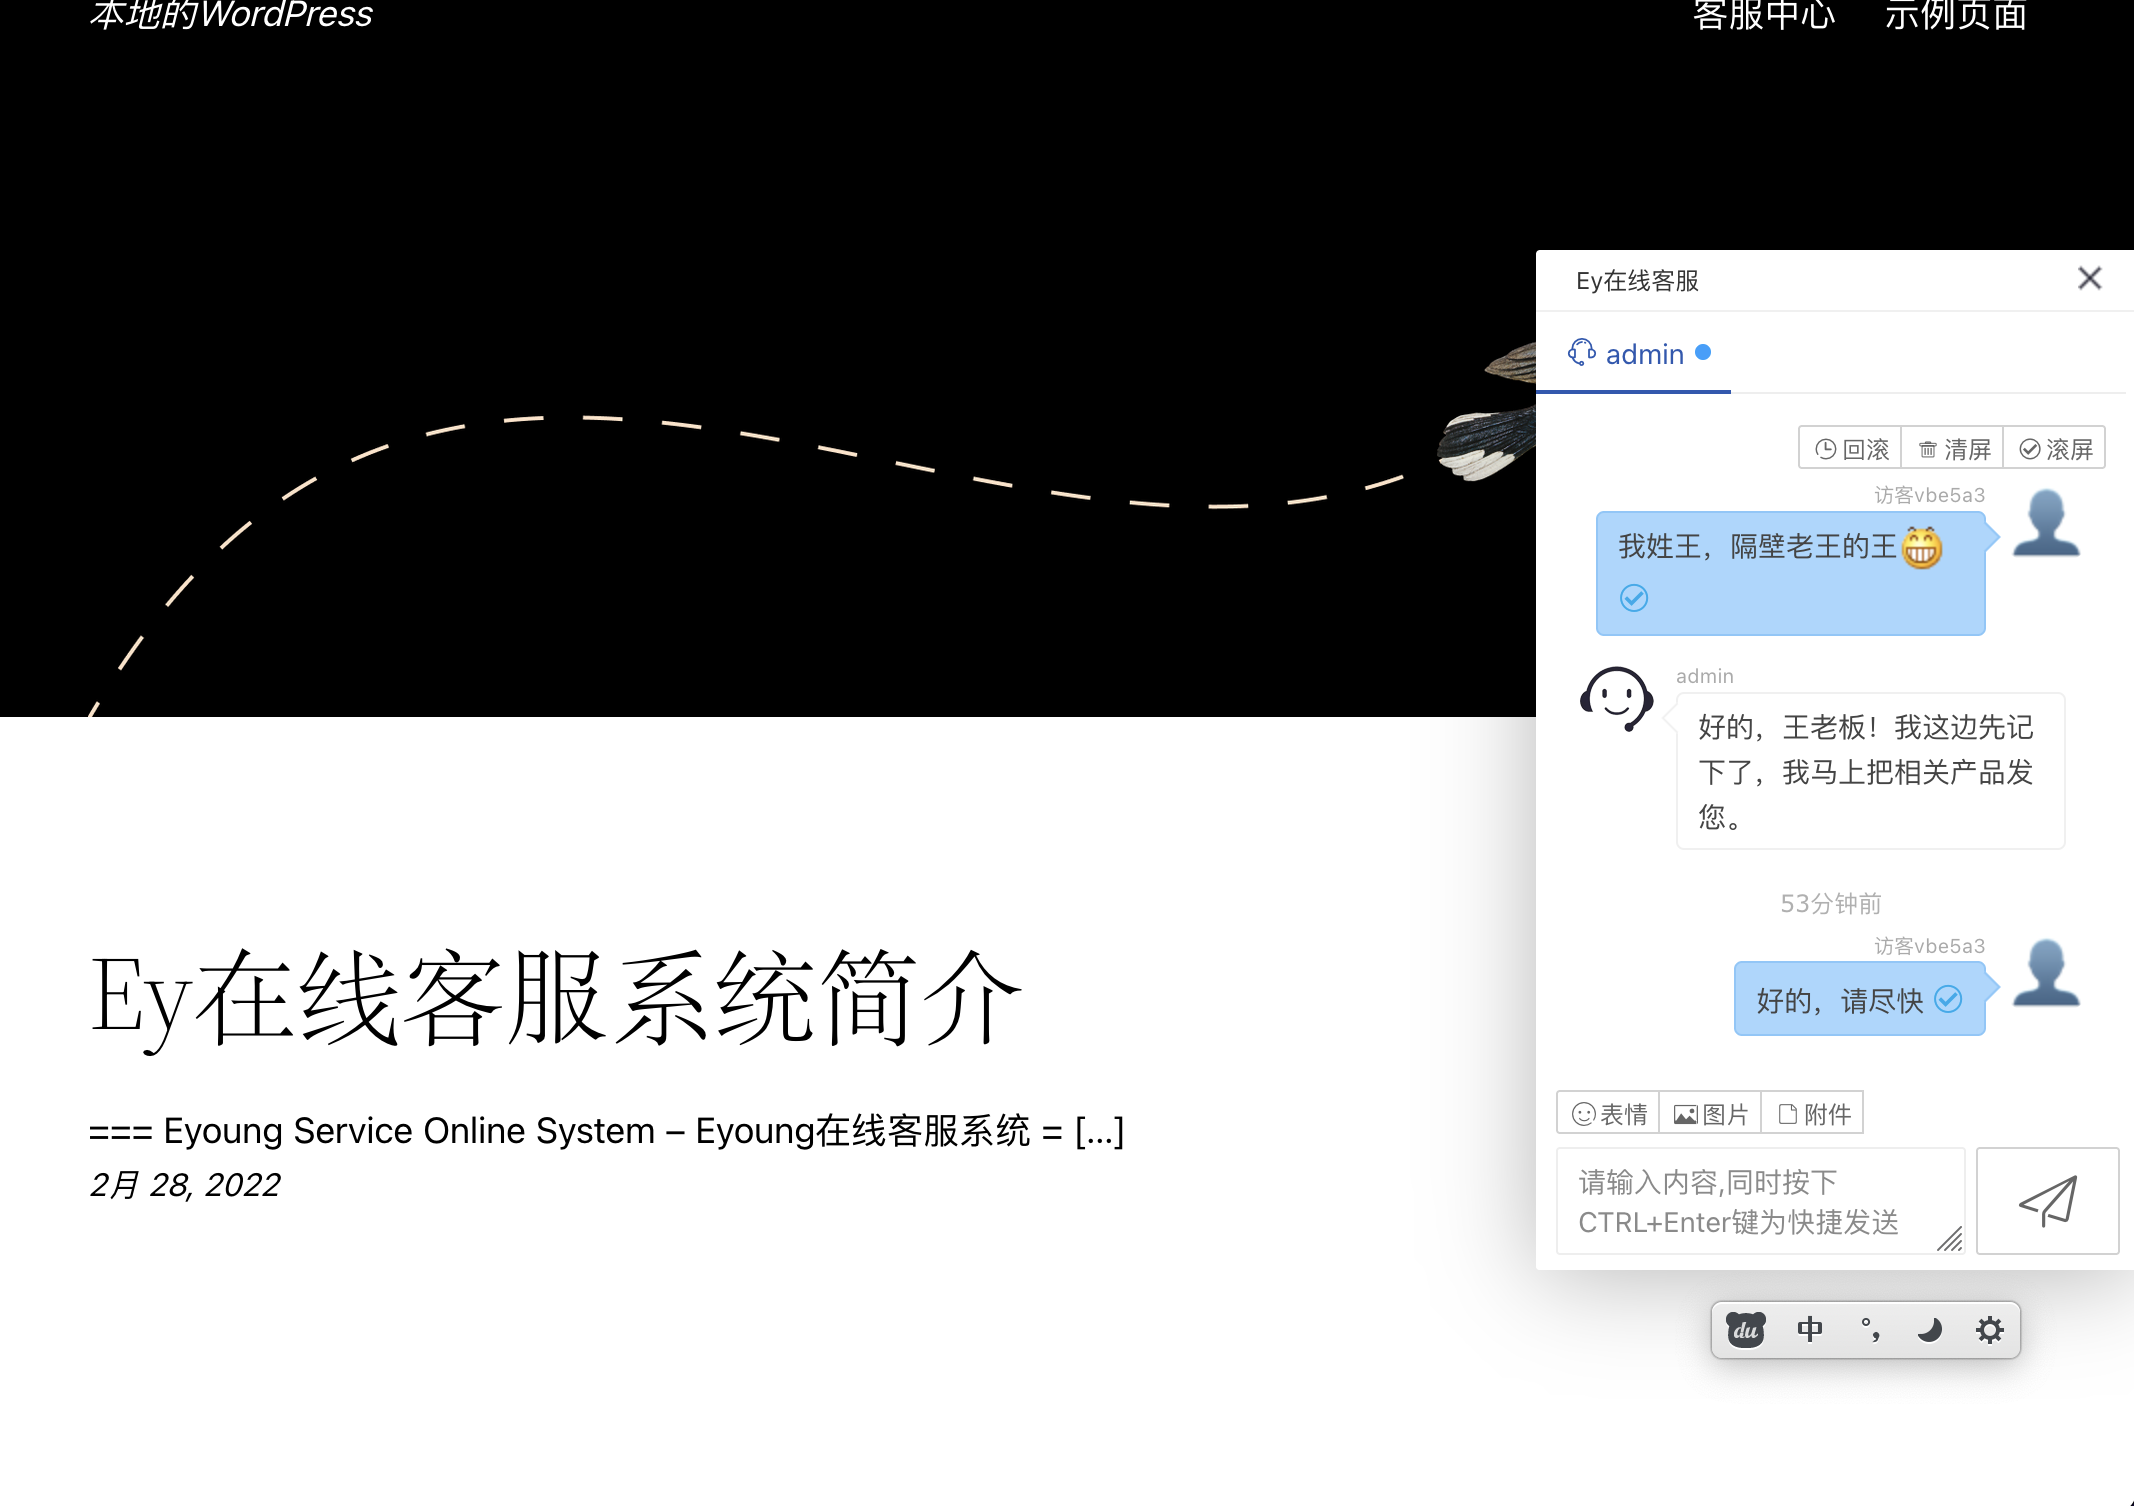 Eyoung 在线客服系统用户端标签展开截图。